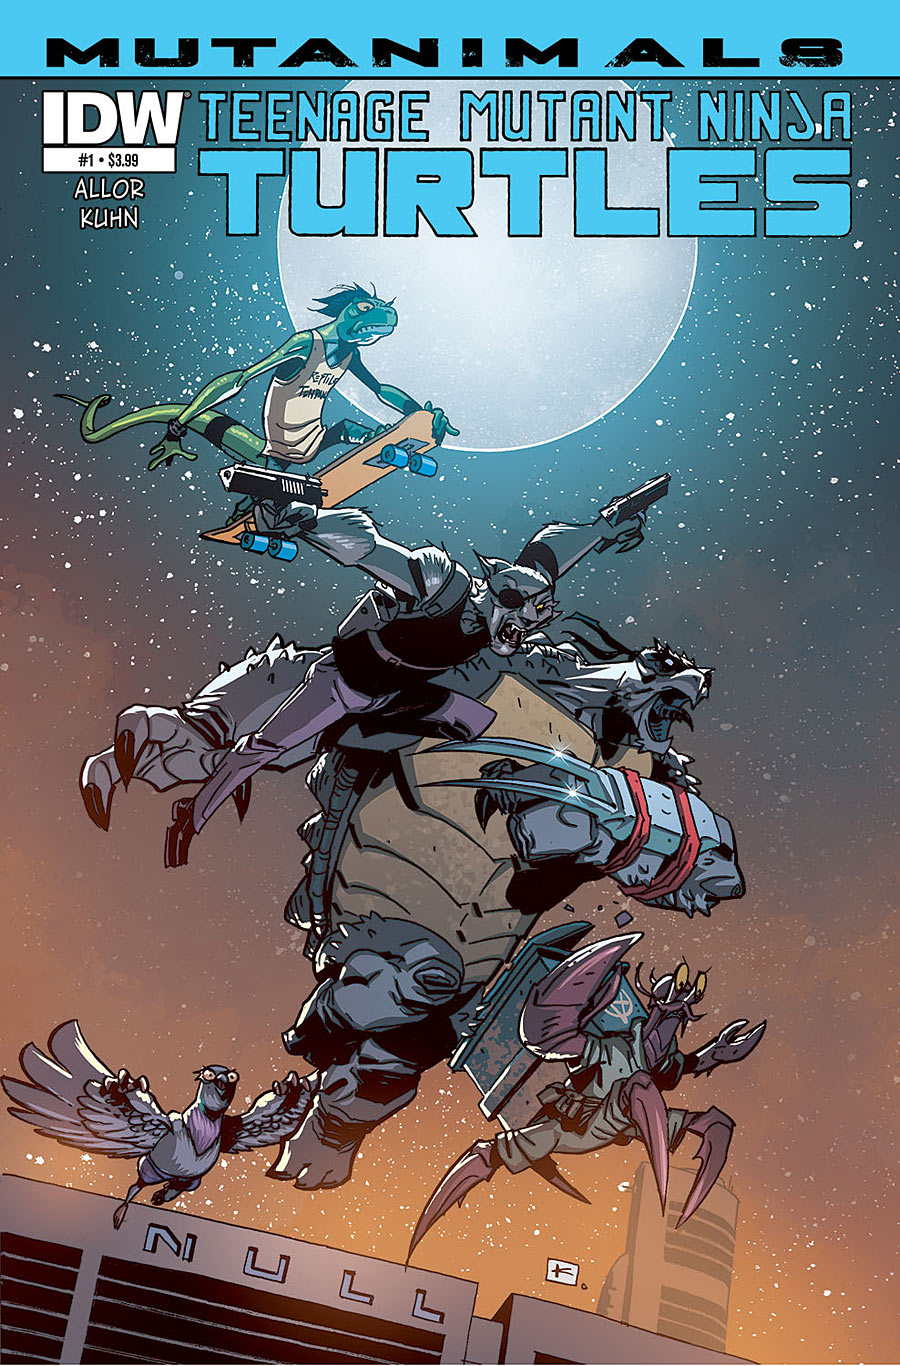 Teenage Mutant Ninja Turtles: Mutanimals #1 (of 4)